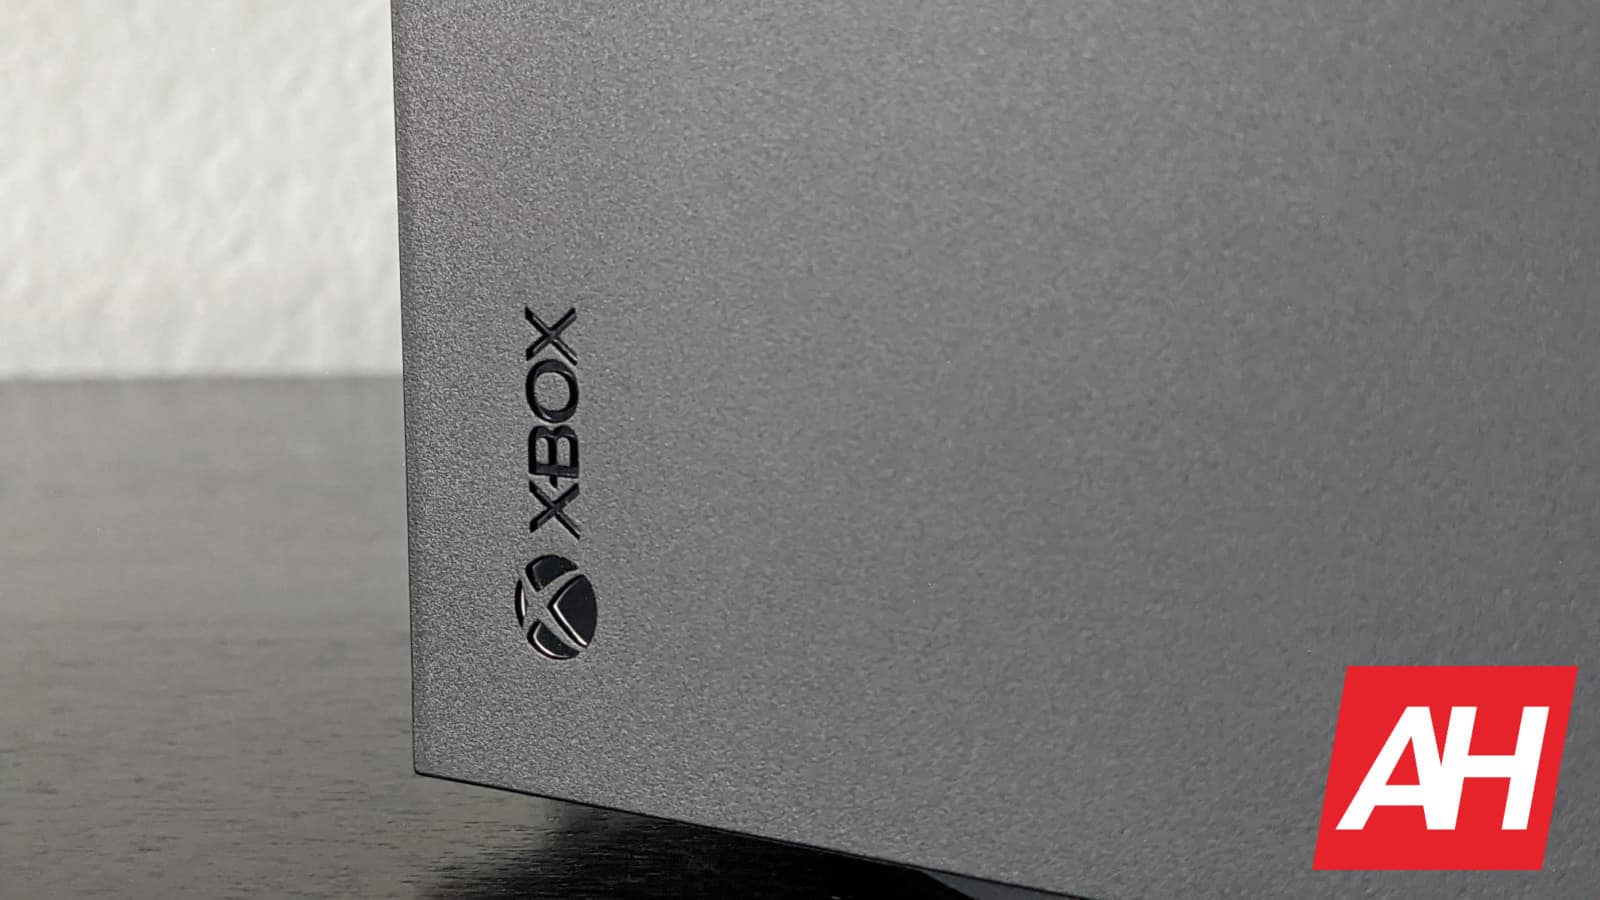 Microsoft spricht bereits darüber, wie leistungsstark die Xbox der nächsten Generation sein wird